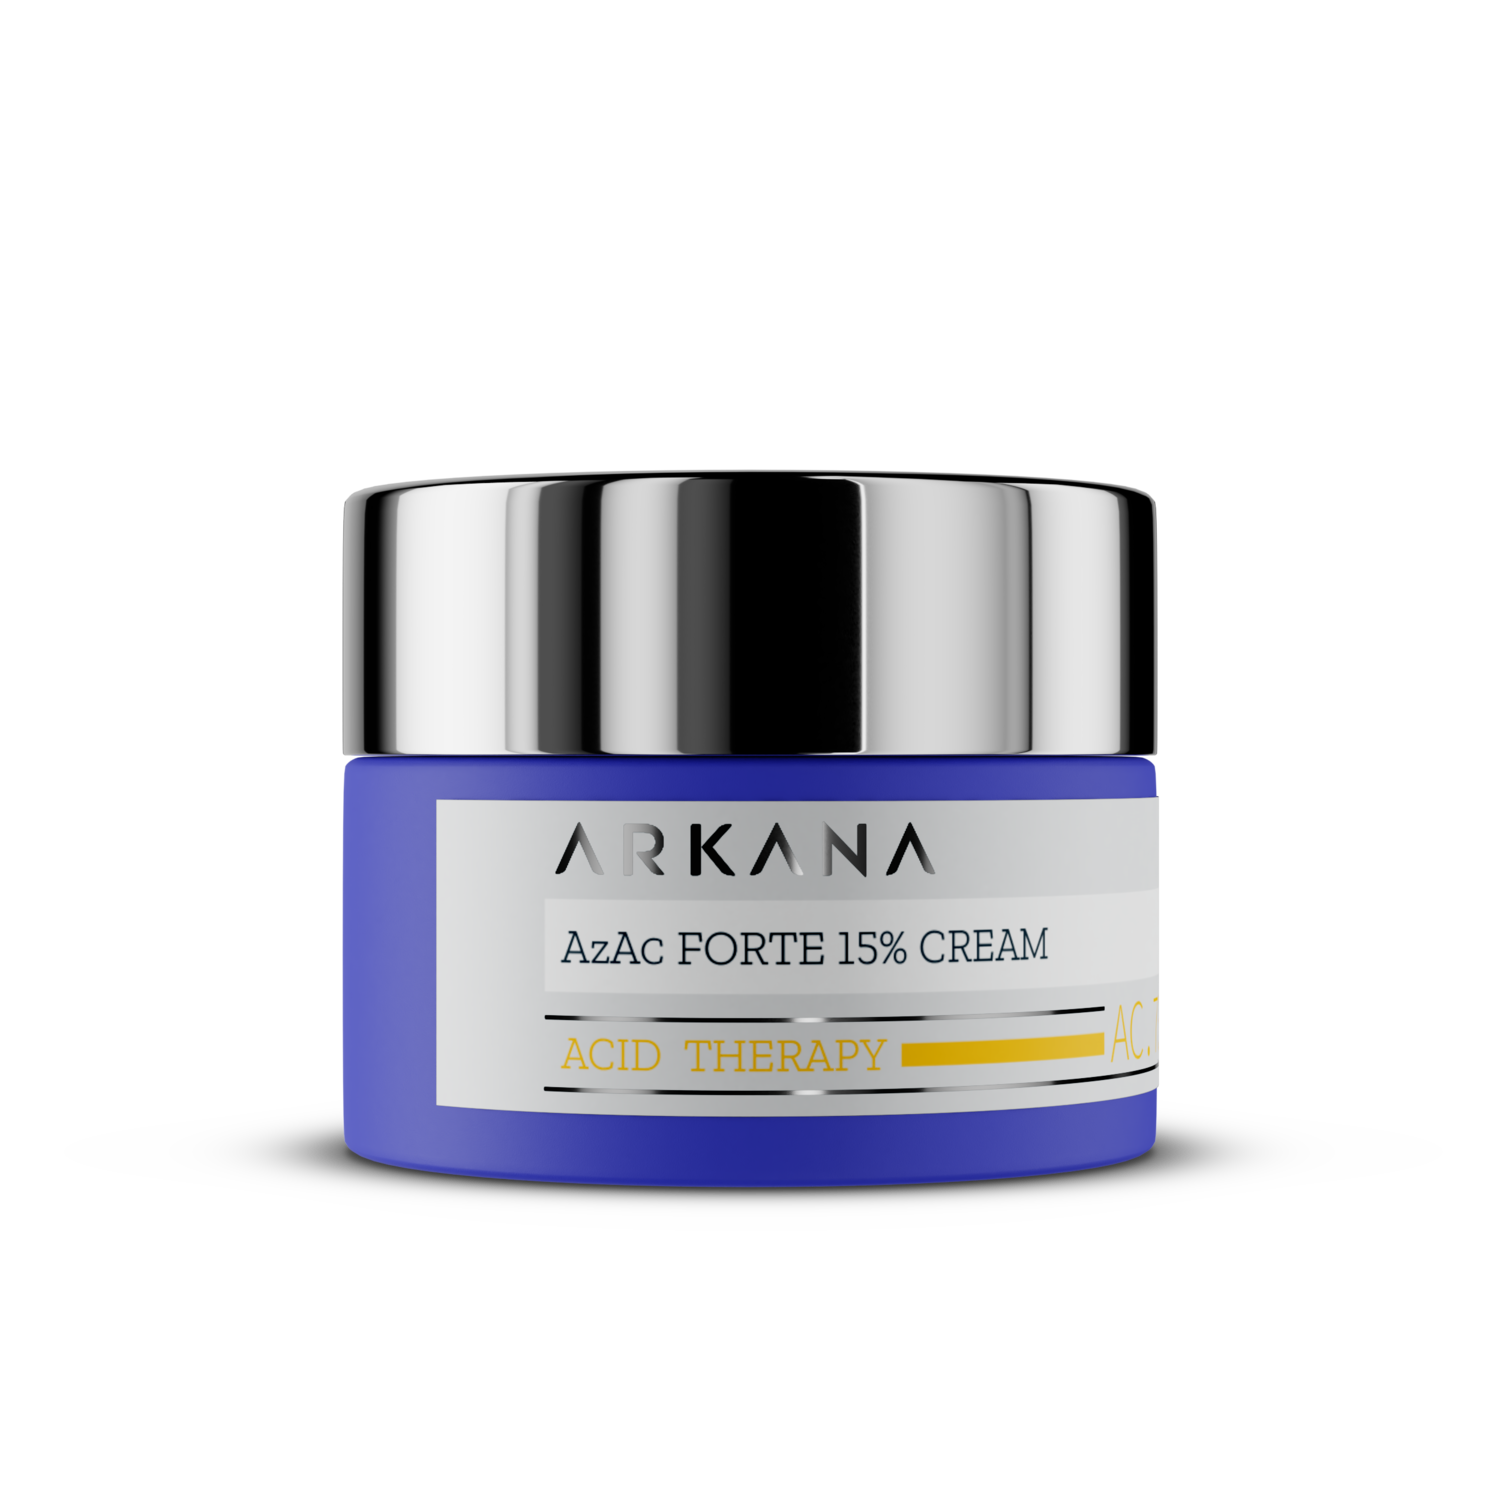 Azac Forte 15% Cream